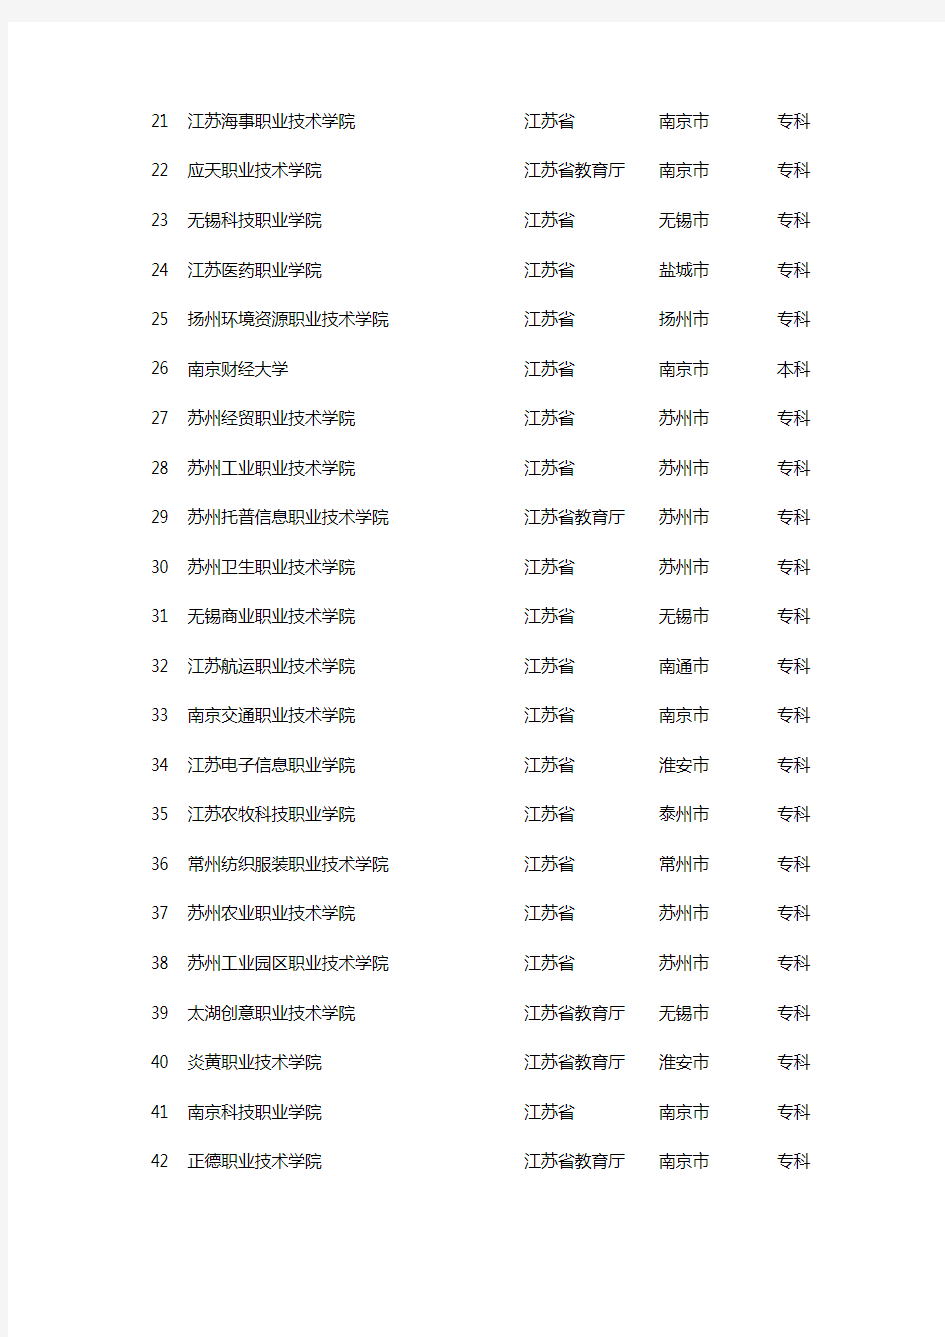 江苏省专科高校名单(学校名称、主管部门、所在地、层次)